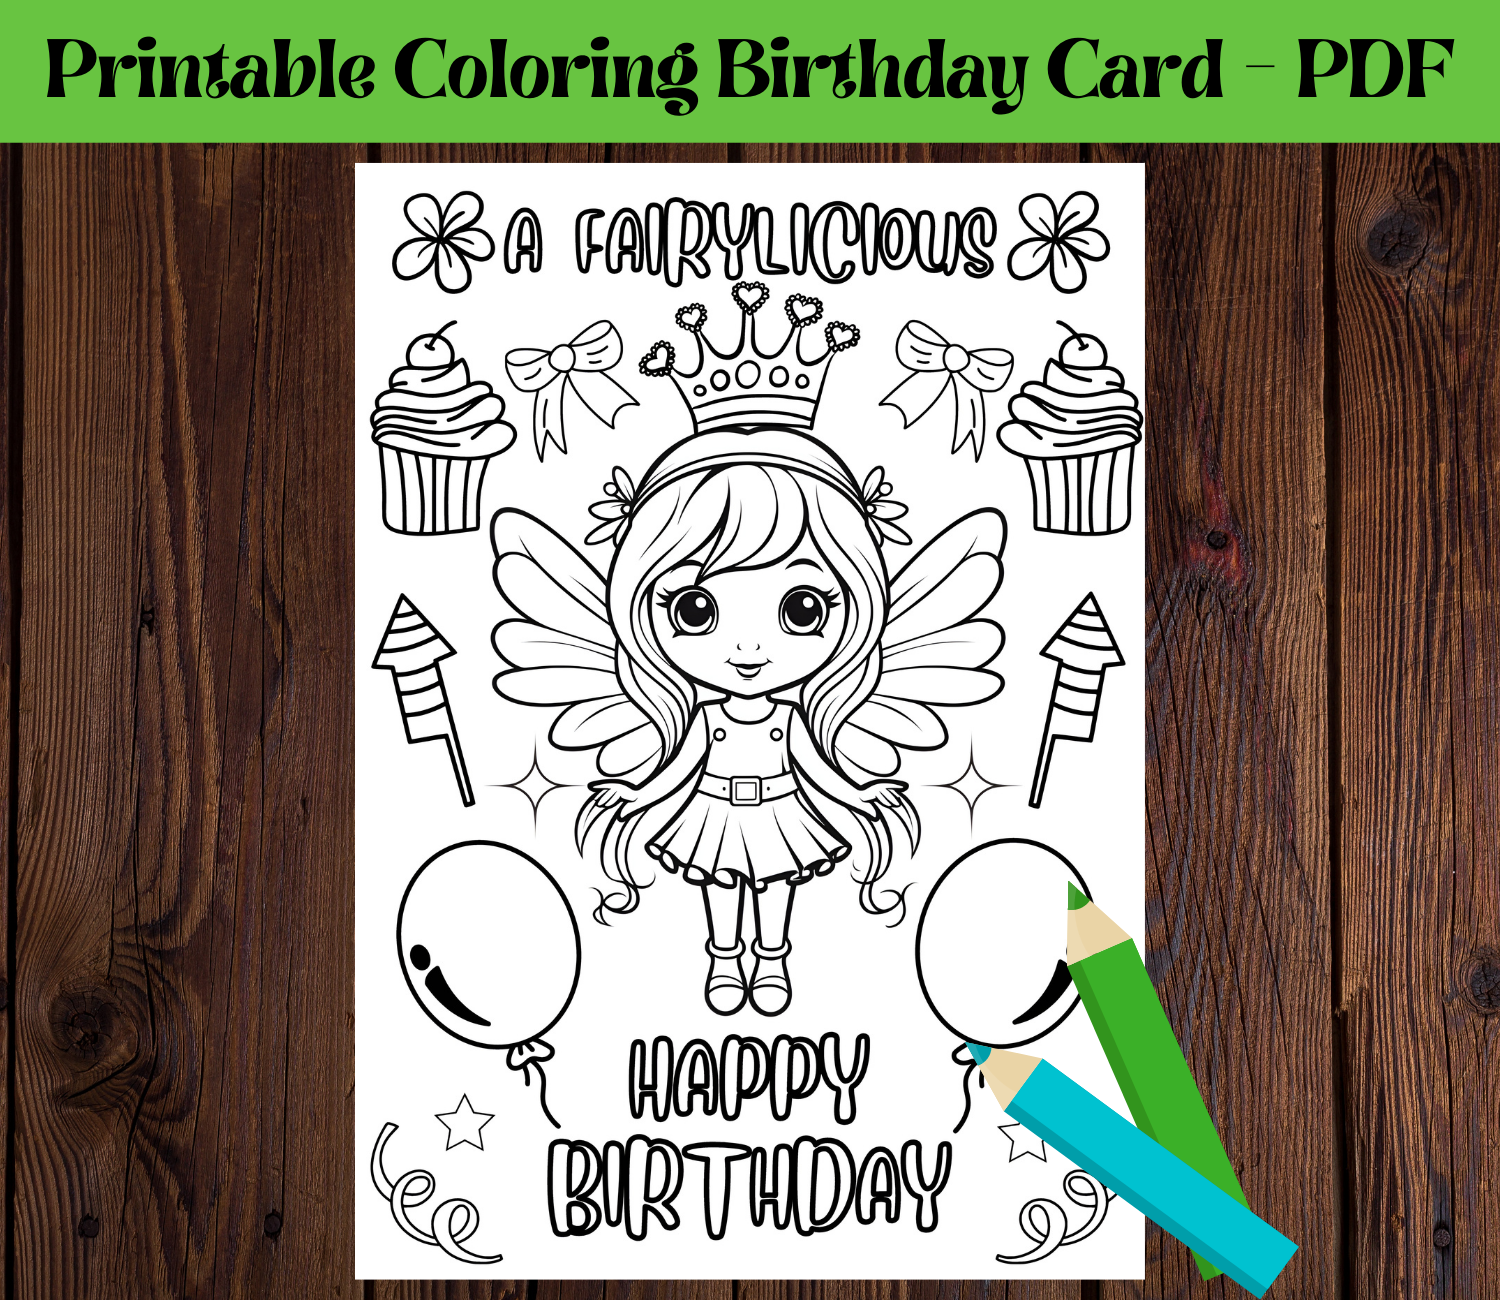 Druckbare Feen-Geburtstagsgrußkarte zum Ausmalen für Kinder, DIY-Geburtstagsgeschenk